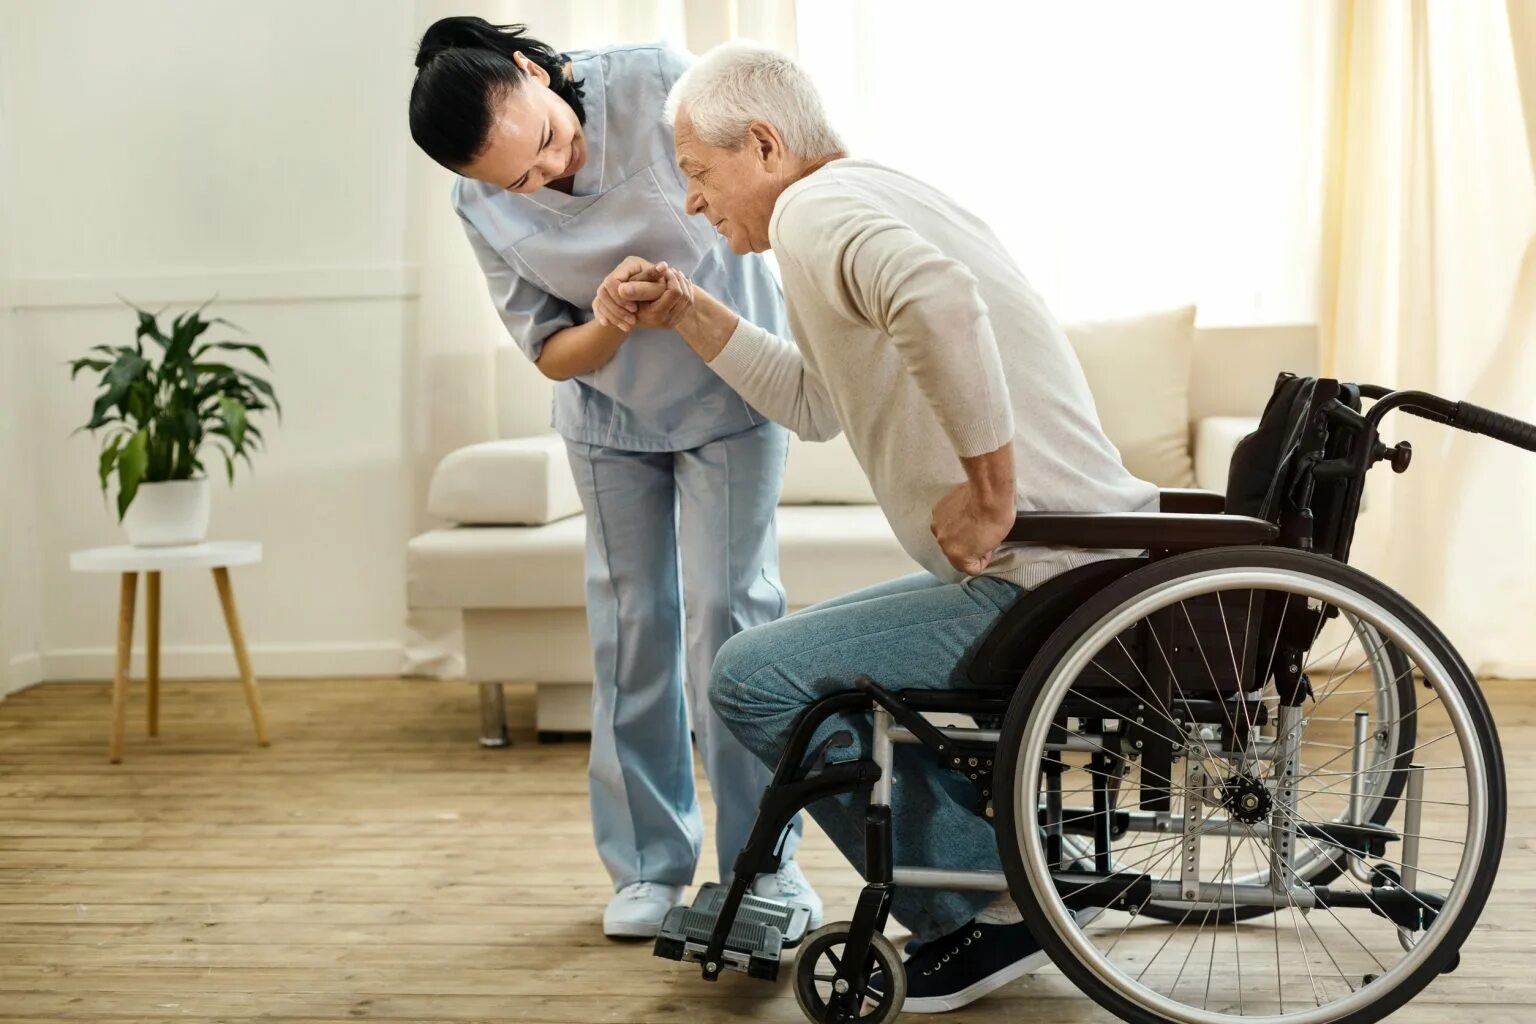 Реабилитация инвалидов. Инвалидность. Реабилитация пожилых. Люди с ограниченными возможностями пожилые. Работа ухаживать за инвалидами